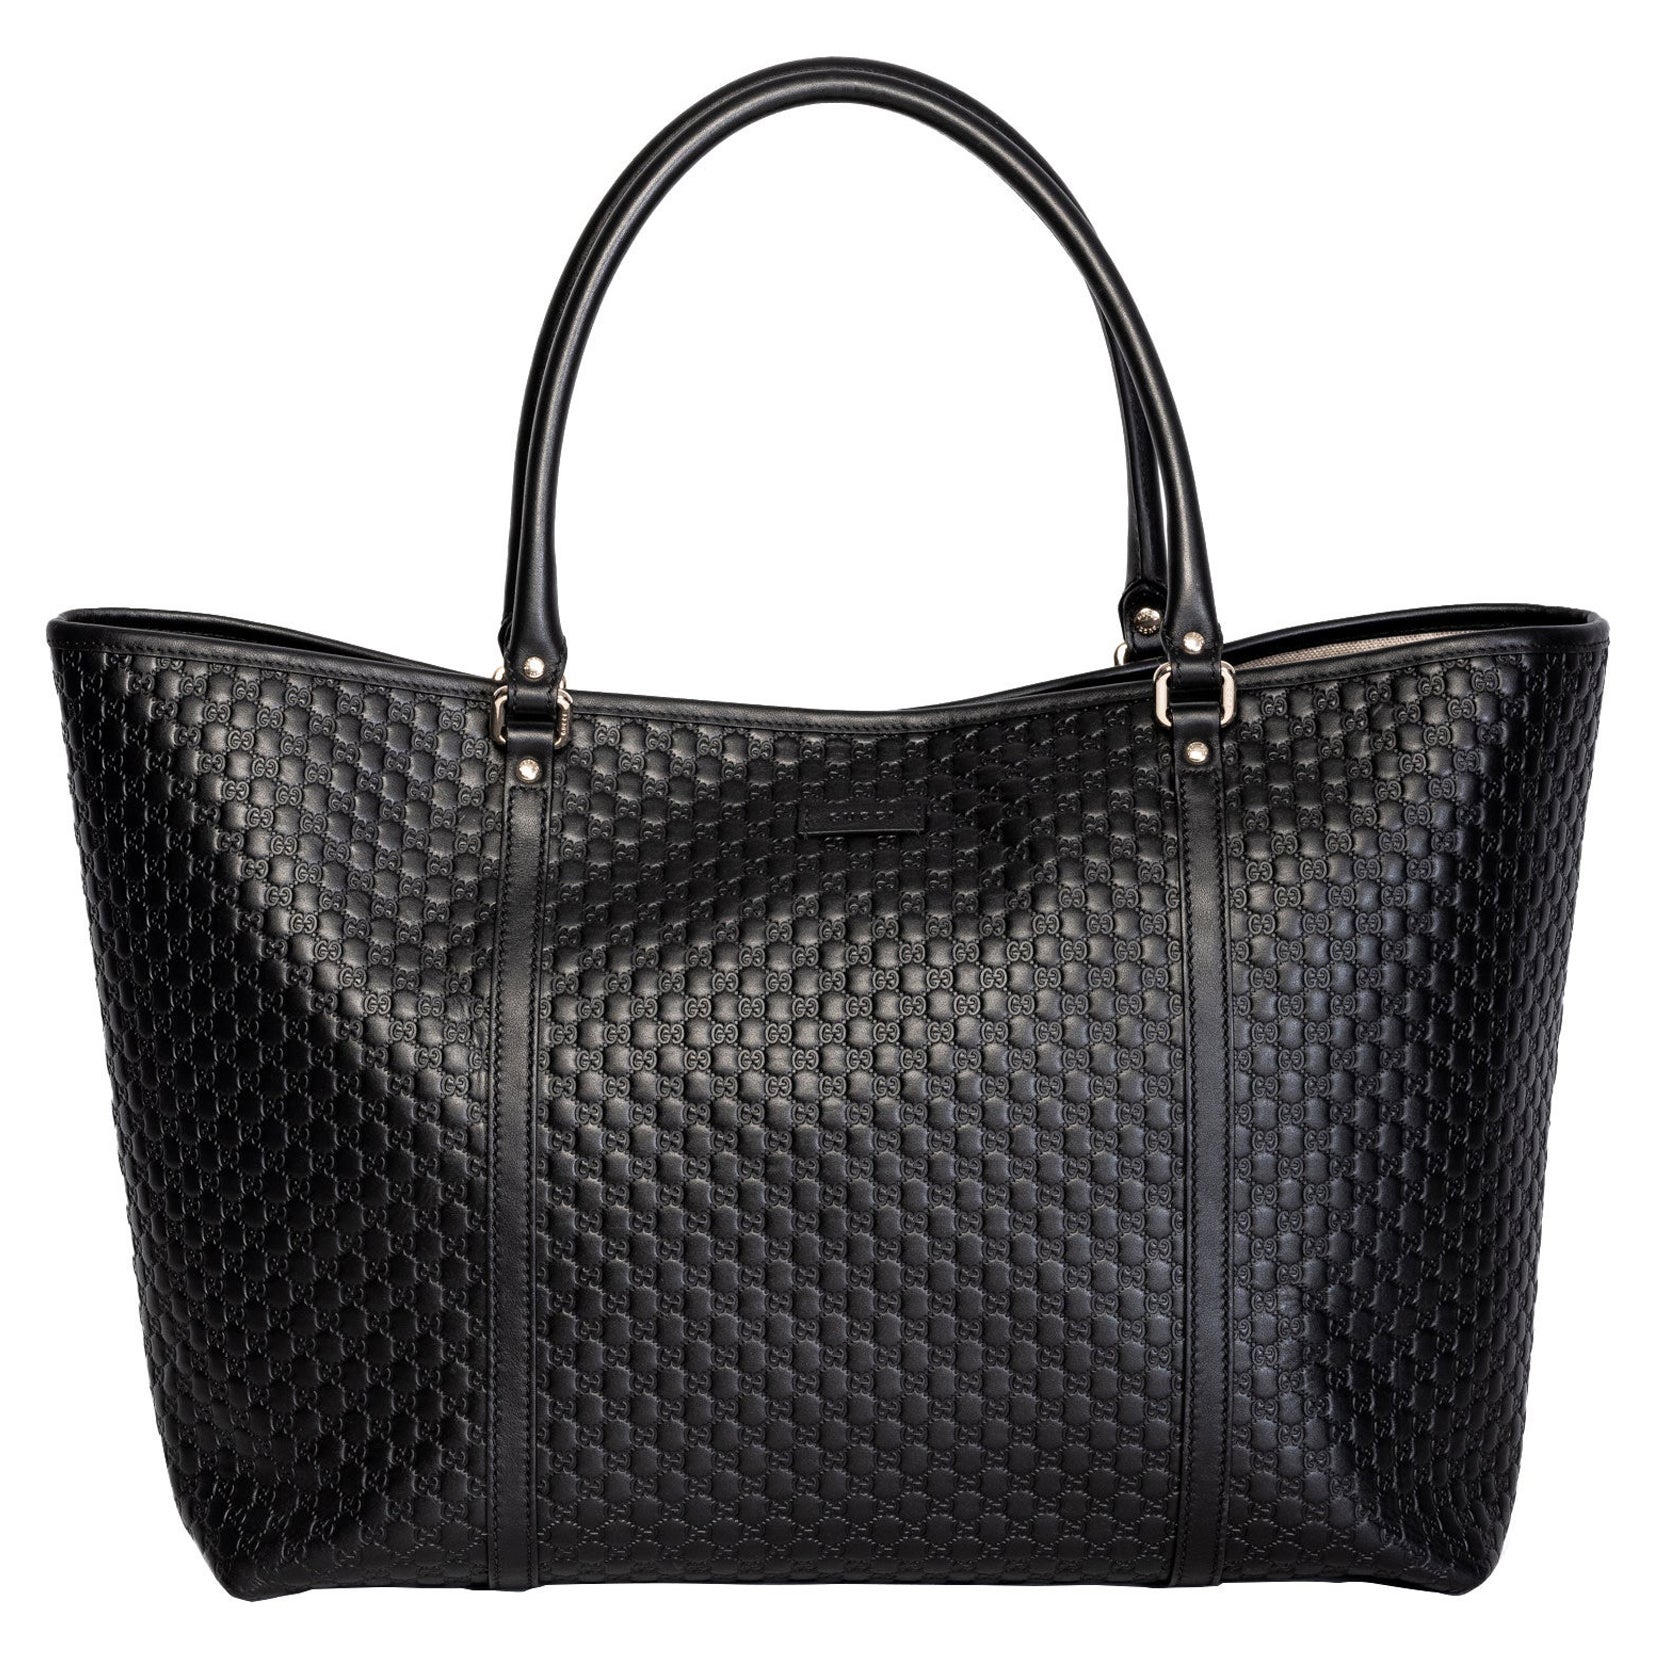 Gucci Black Leather Micro Guccissima Large Joy Tote Bag